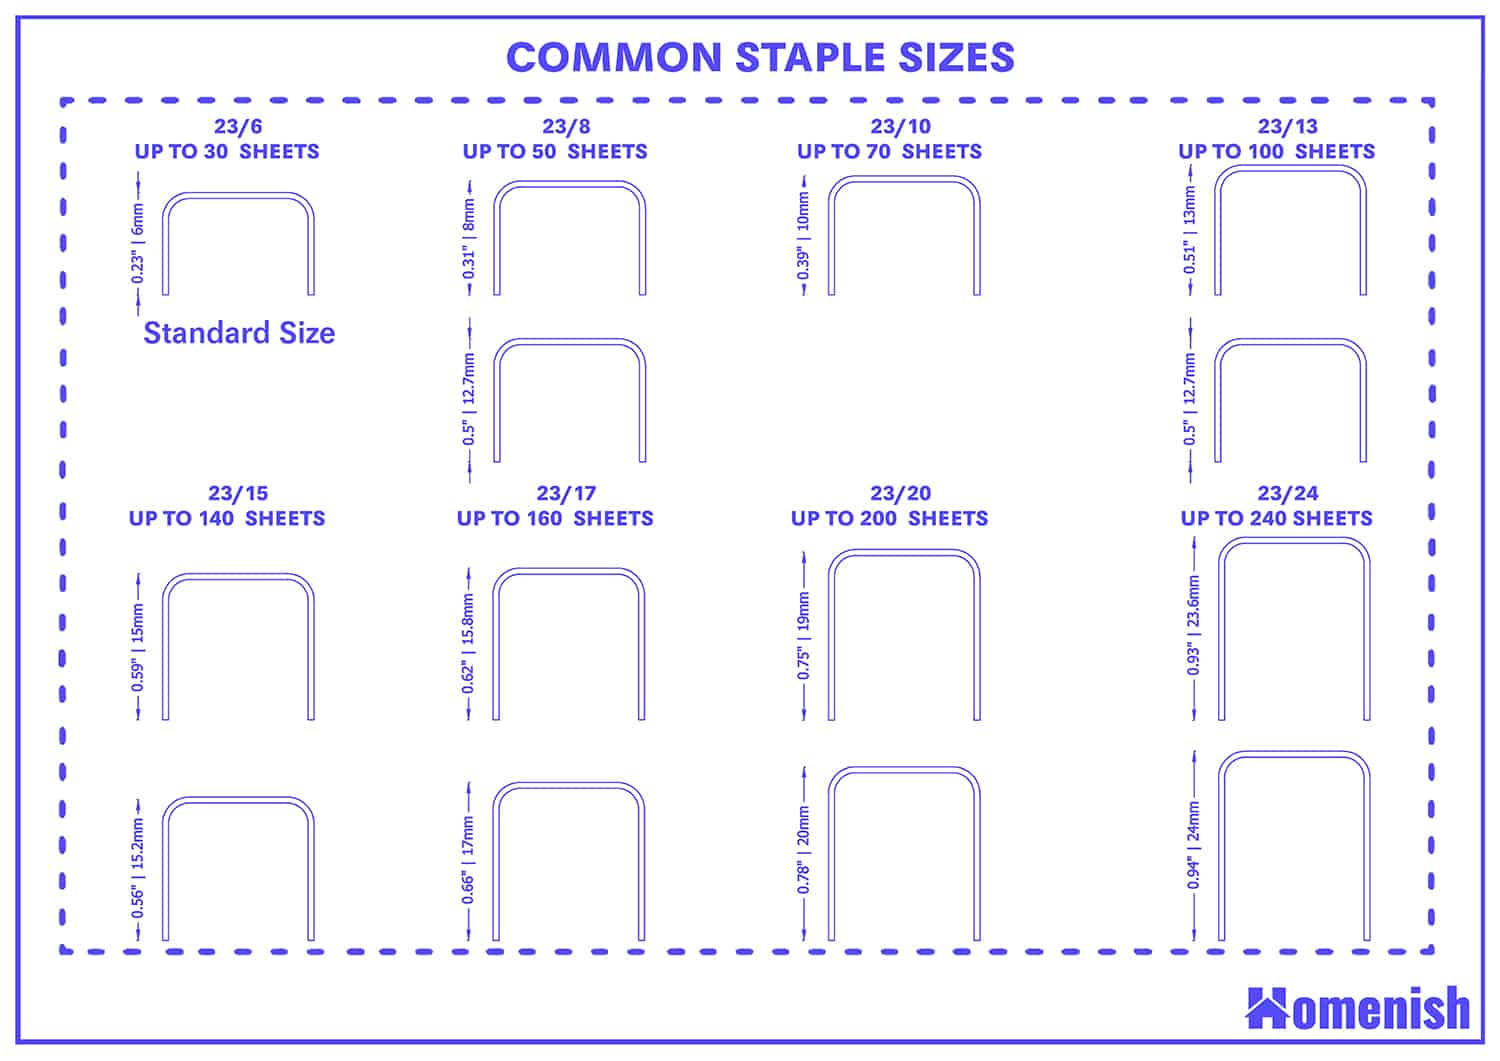 Common Staple Sizes